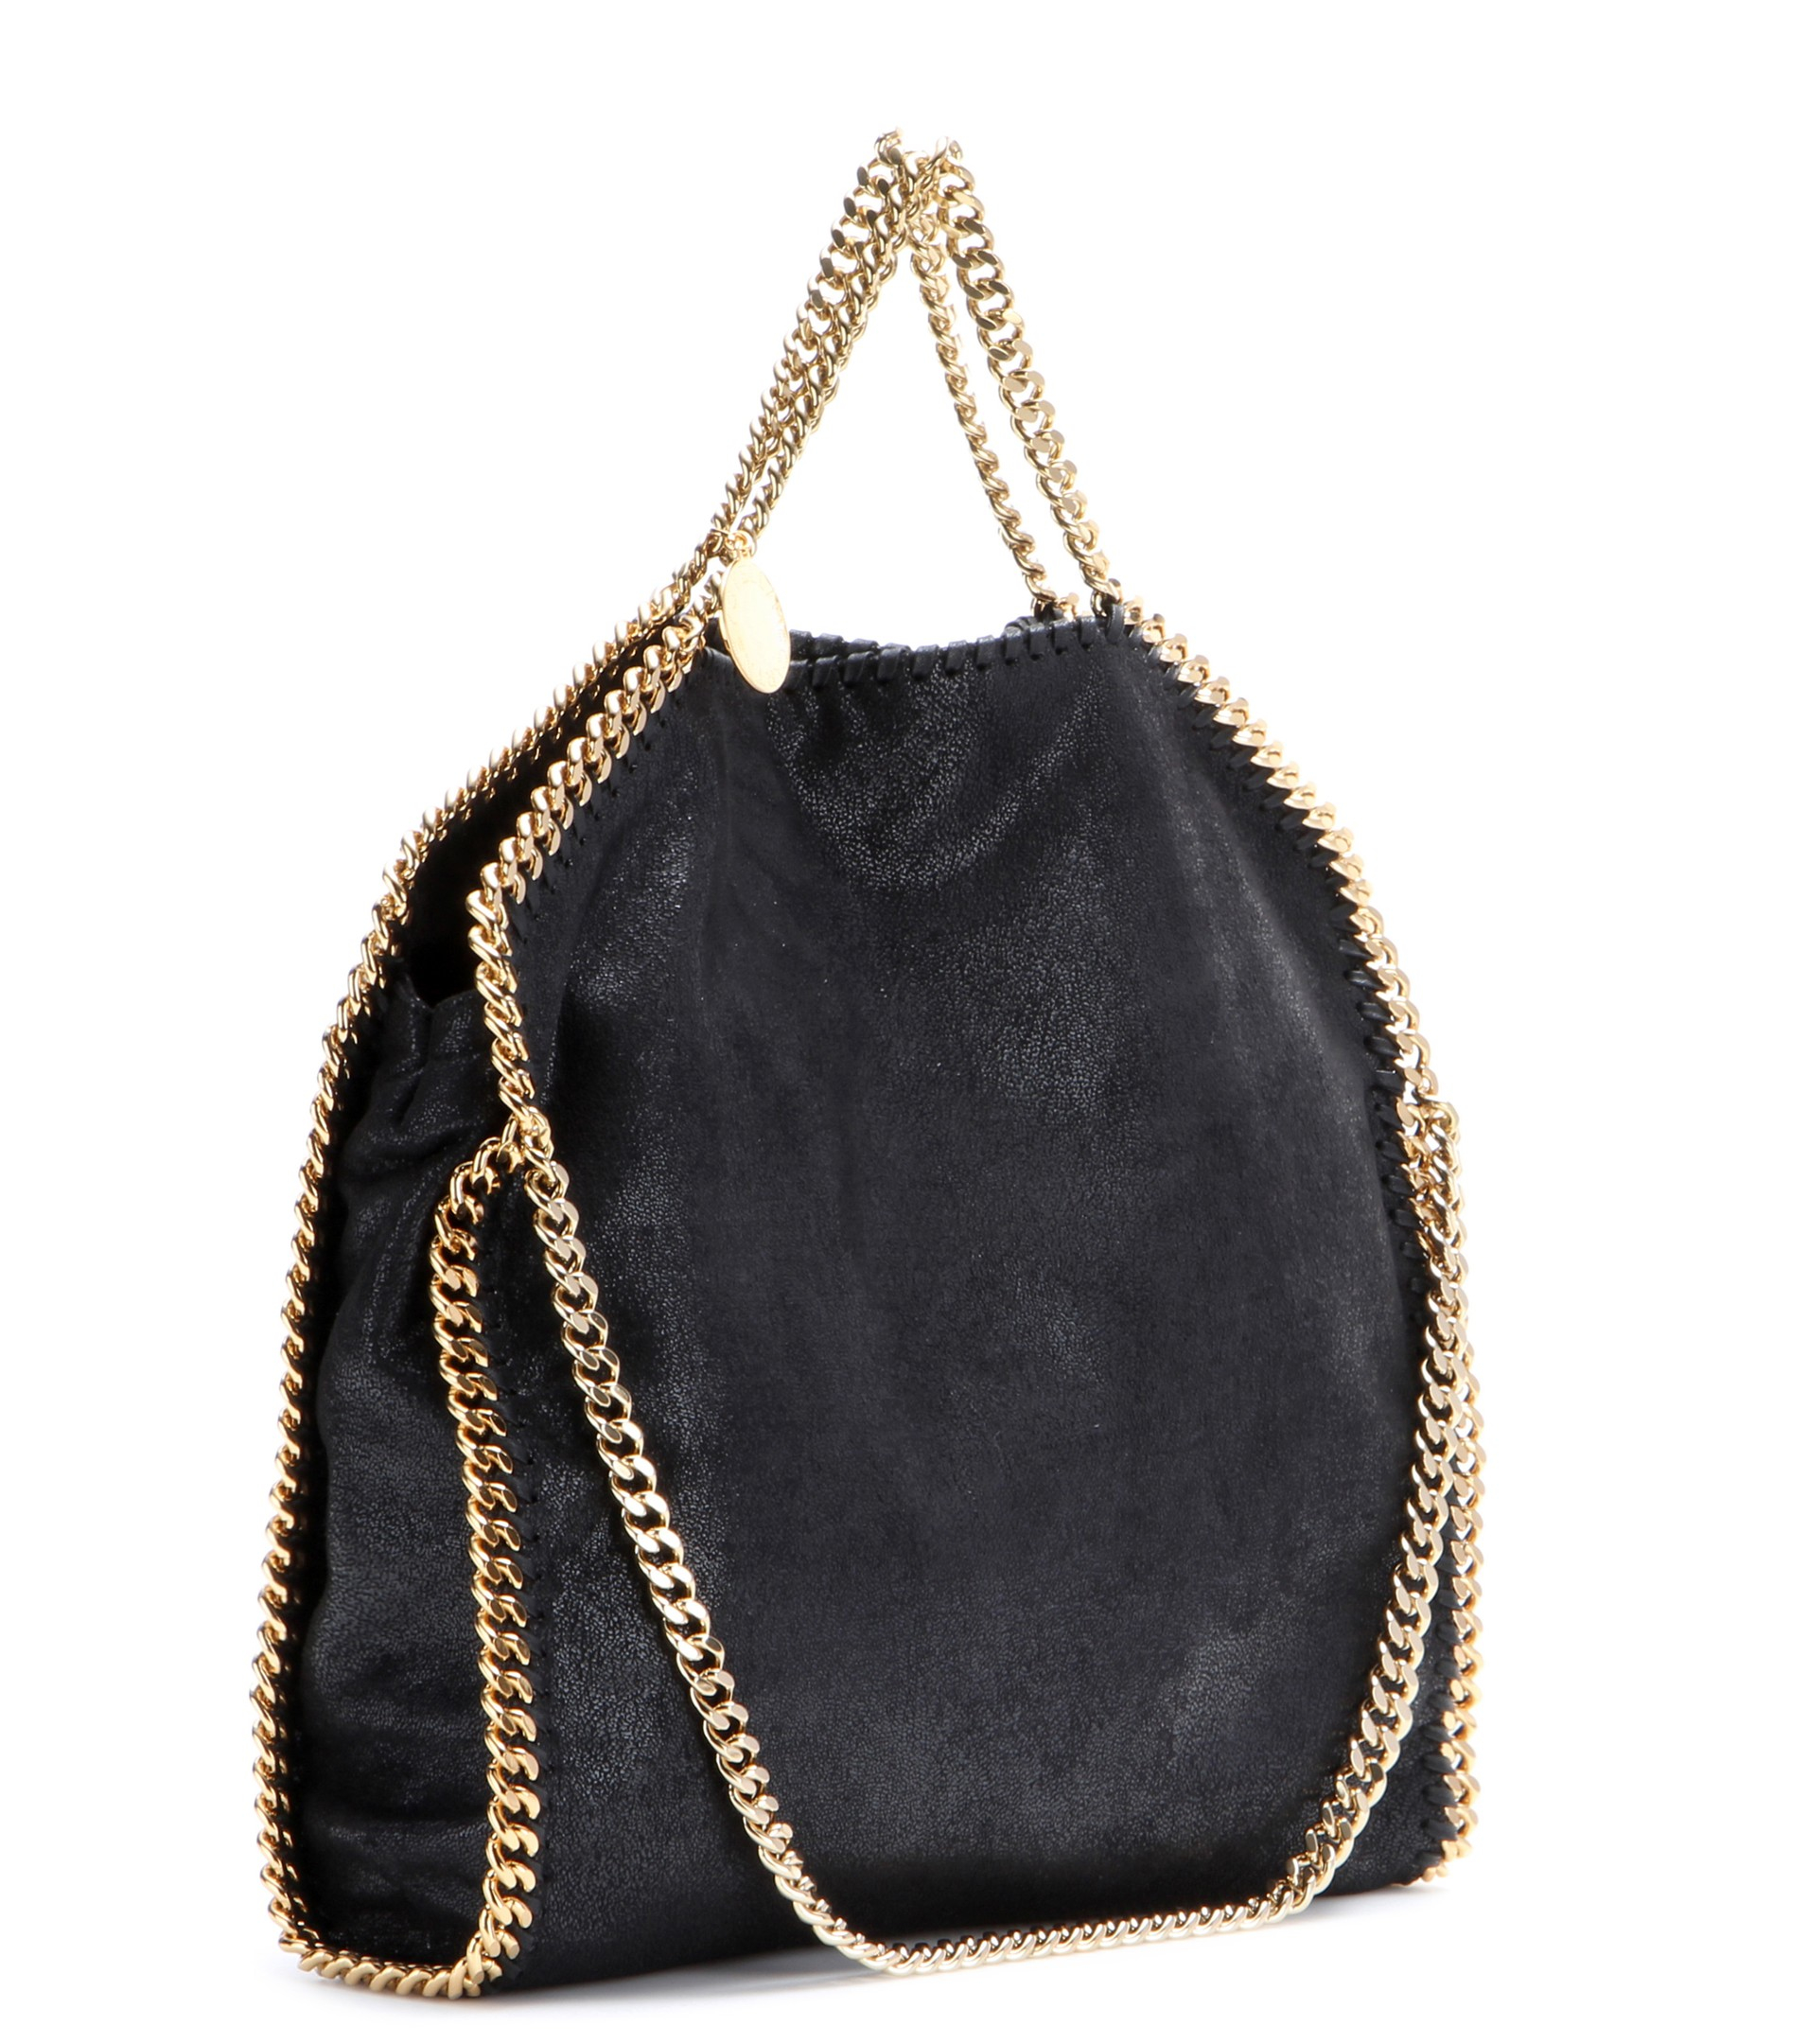 Stella mccartney Falabella Small Shoulder Bag in Black | Lyst